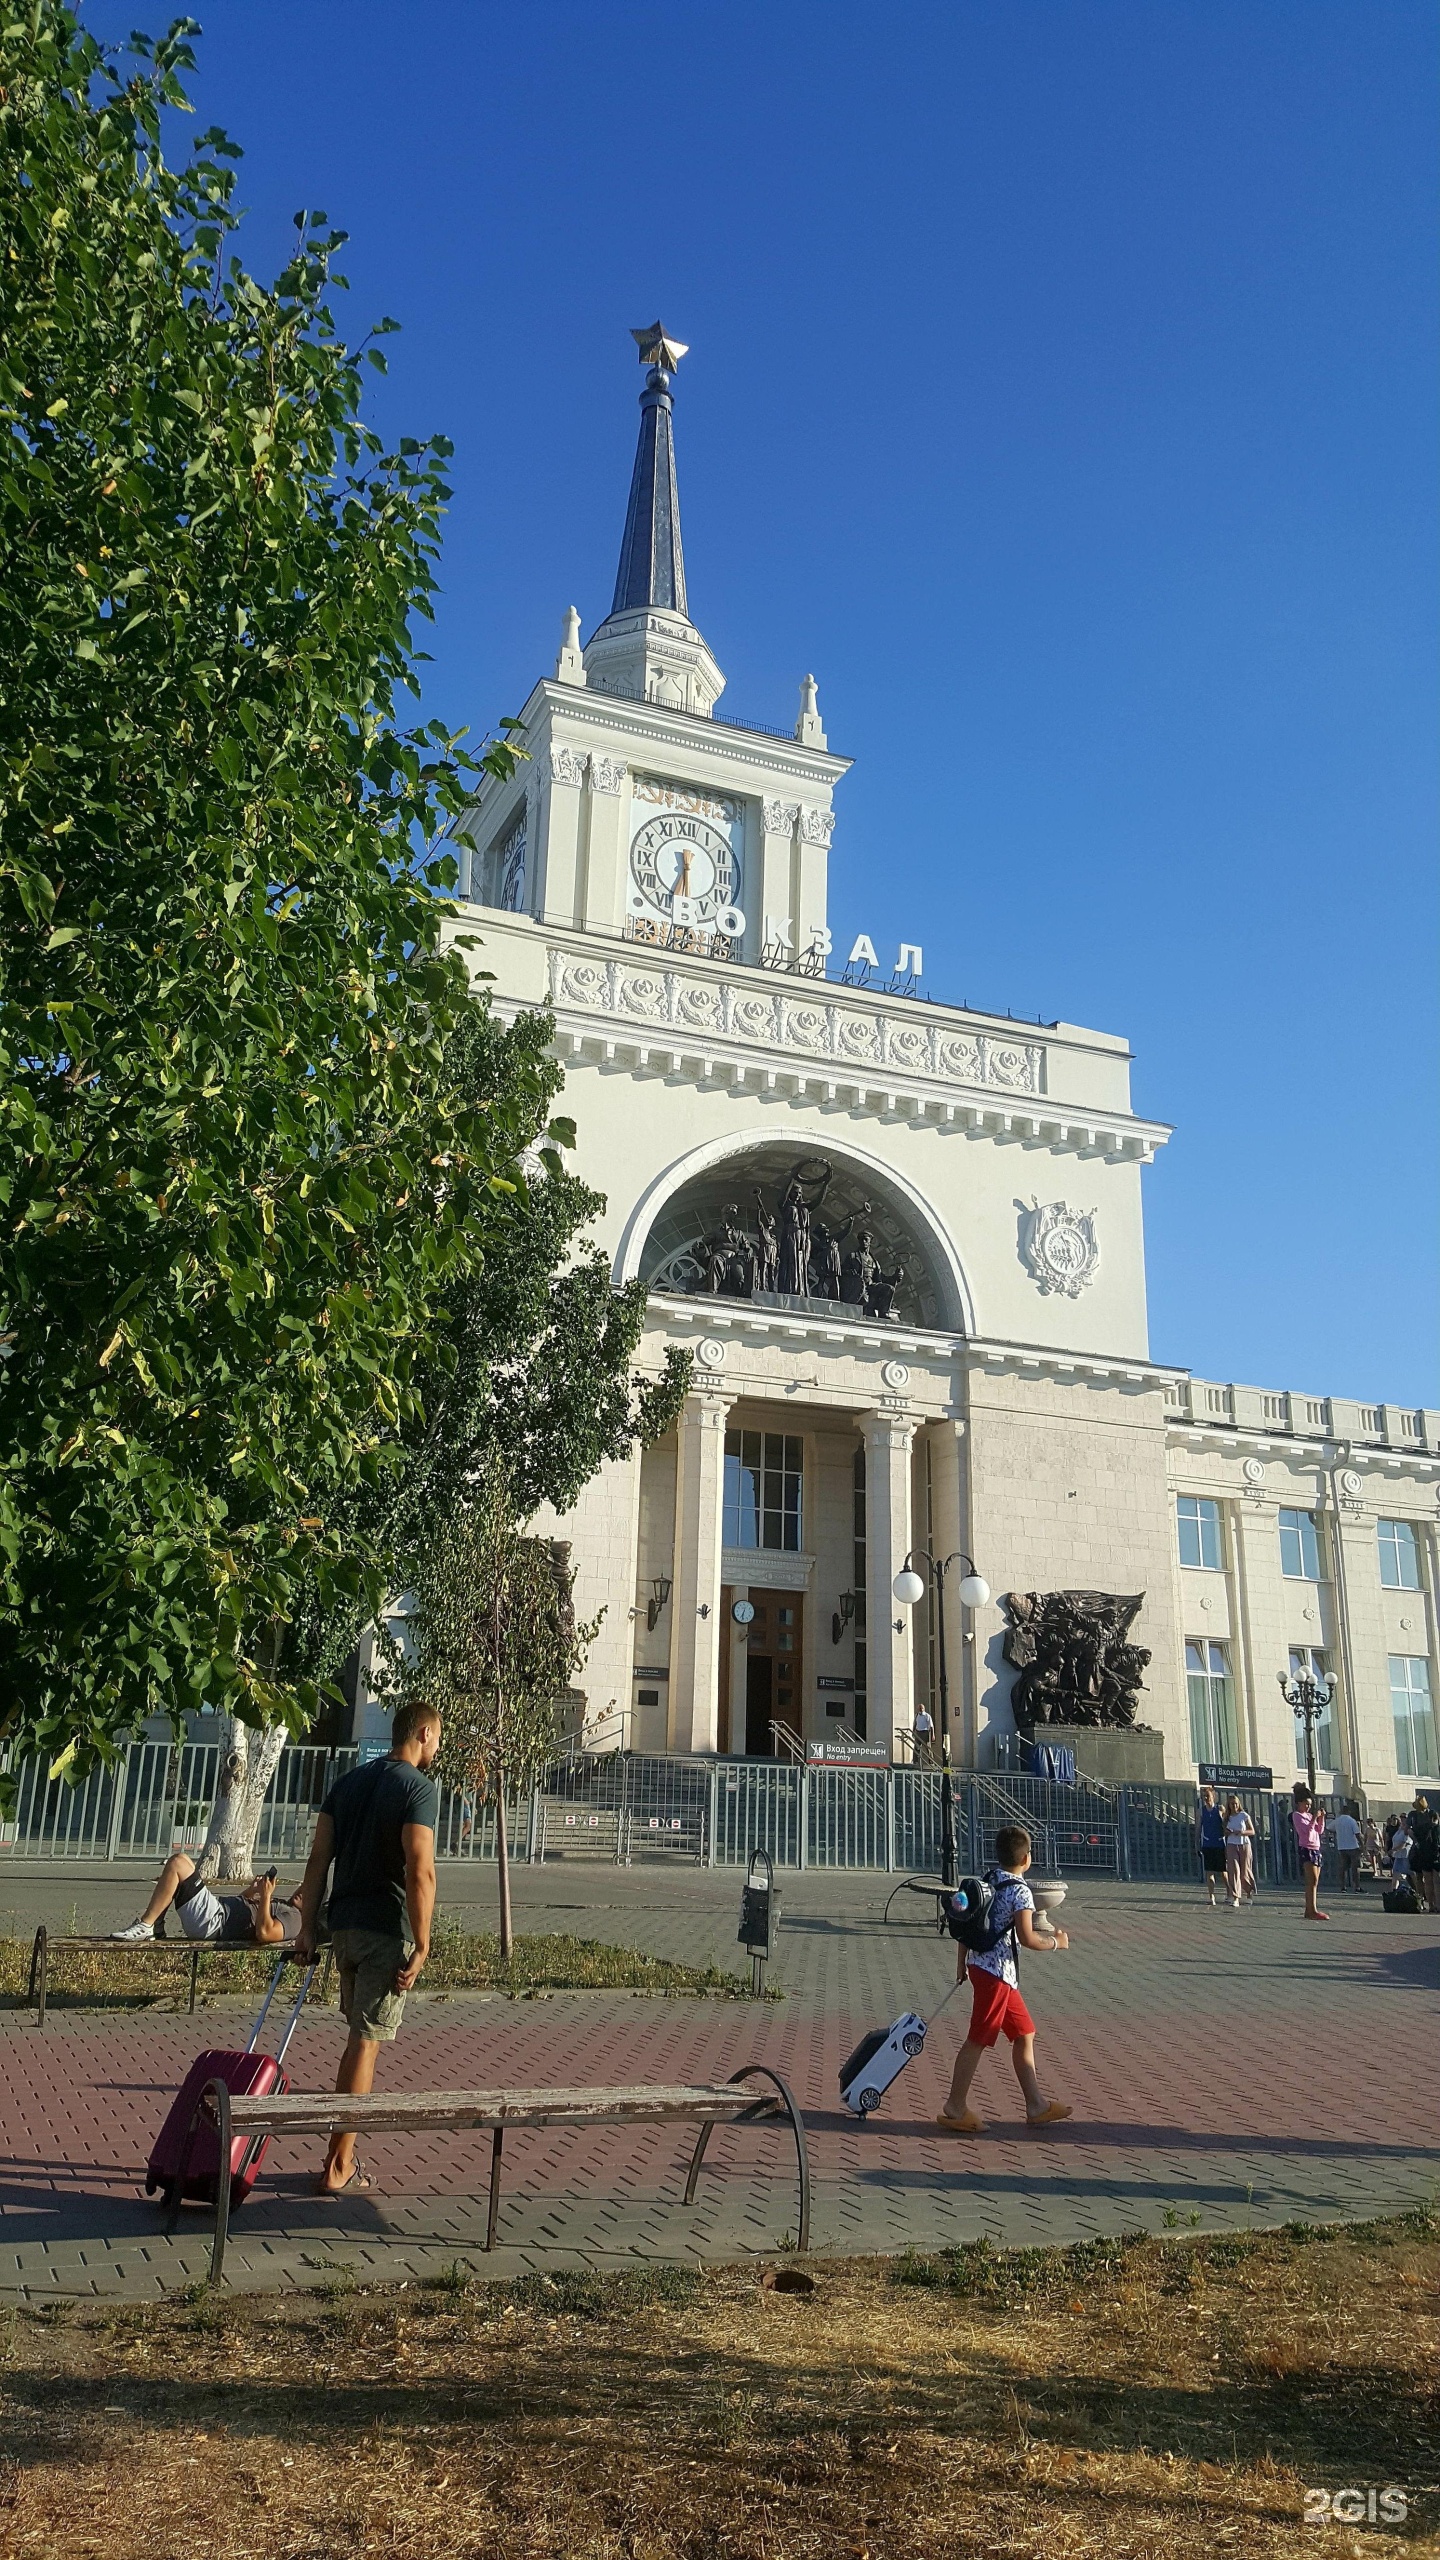 железнодорожный вокзал в волгограде